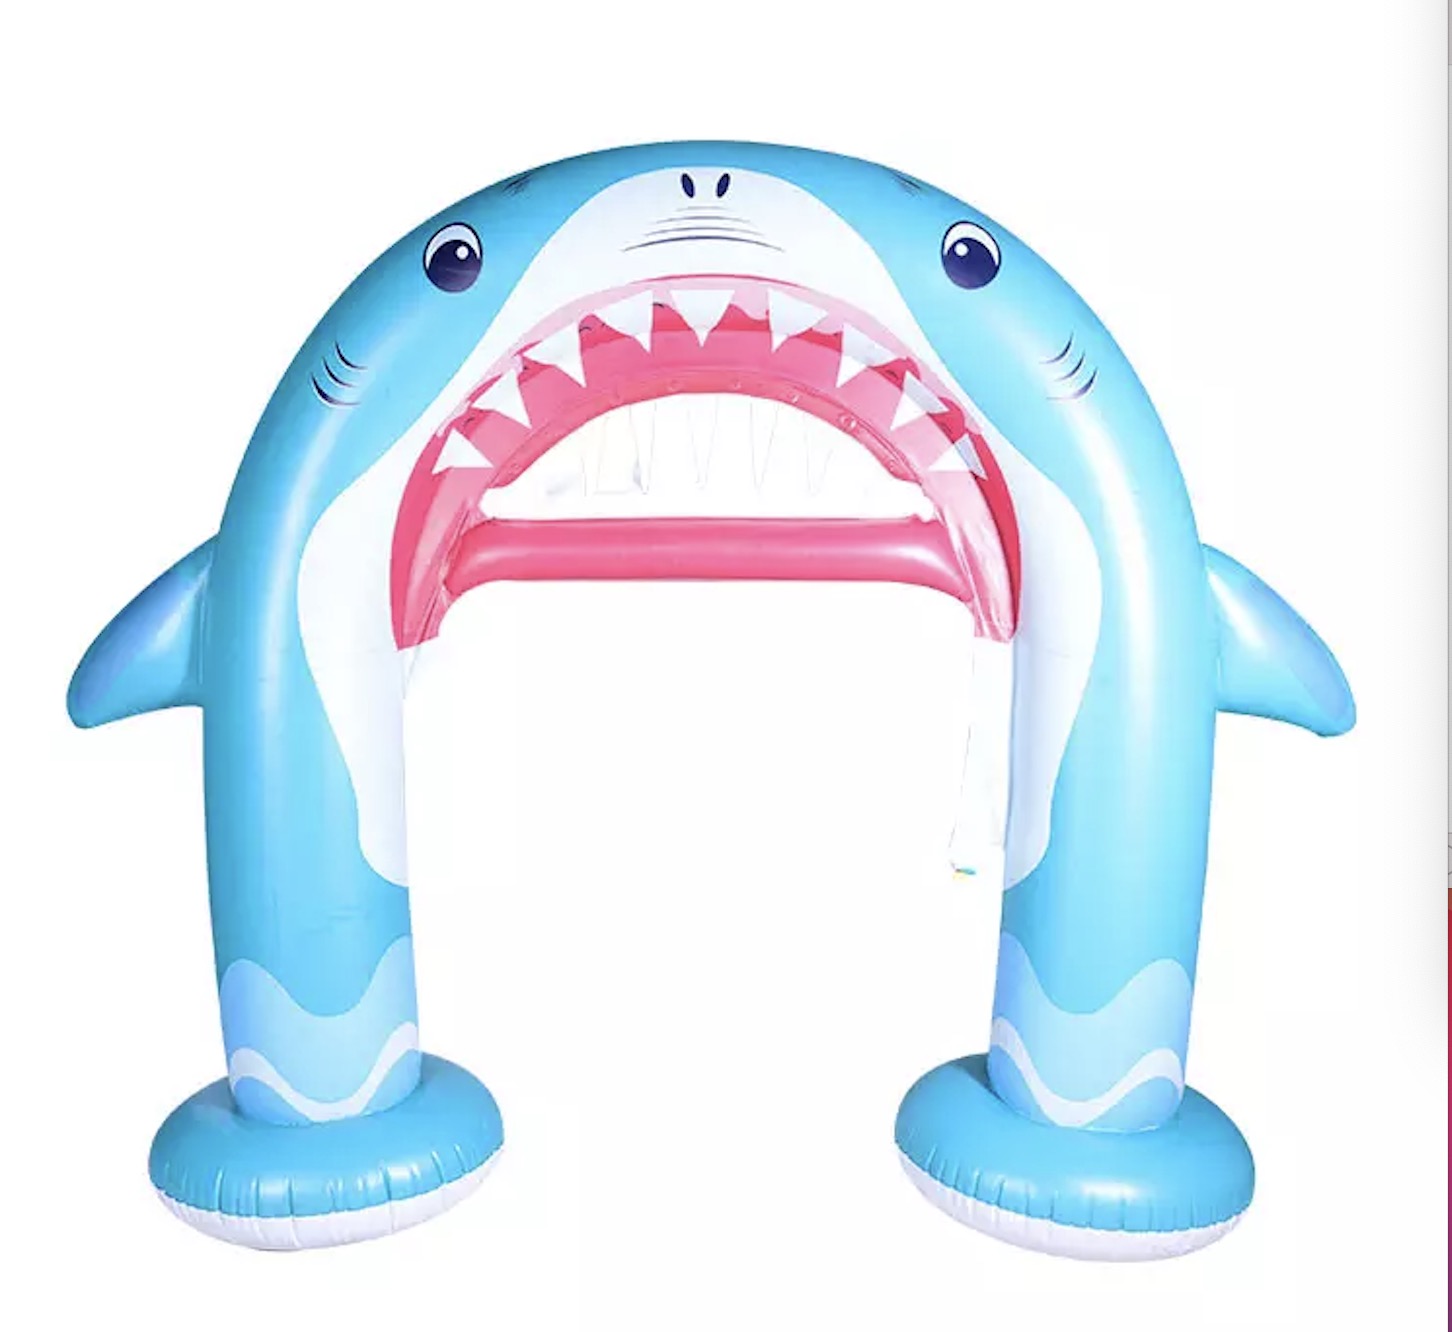 လက္ကား inflatable arch inflatable shark sprinkler inflatable ကလေးကစားစရာ